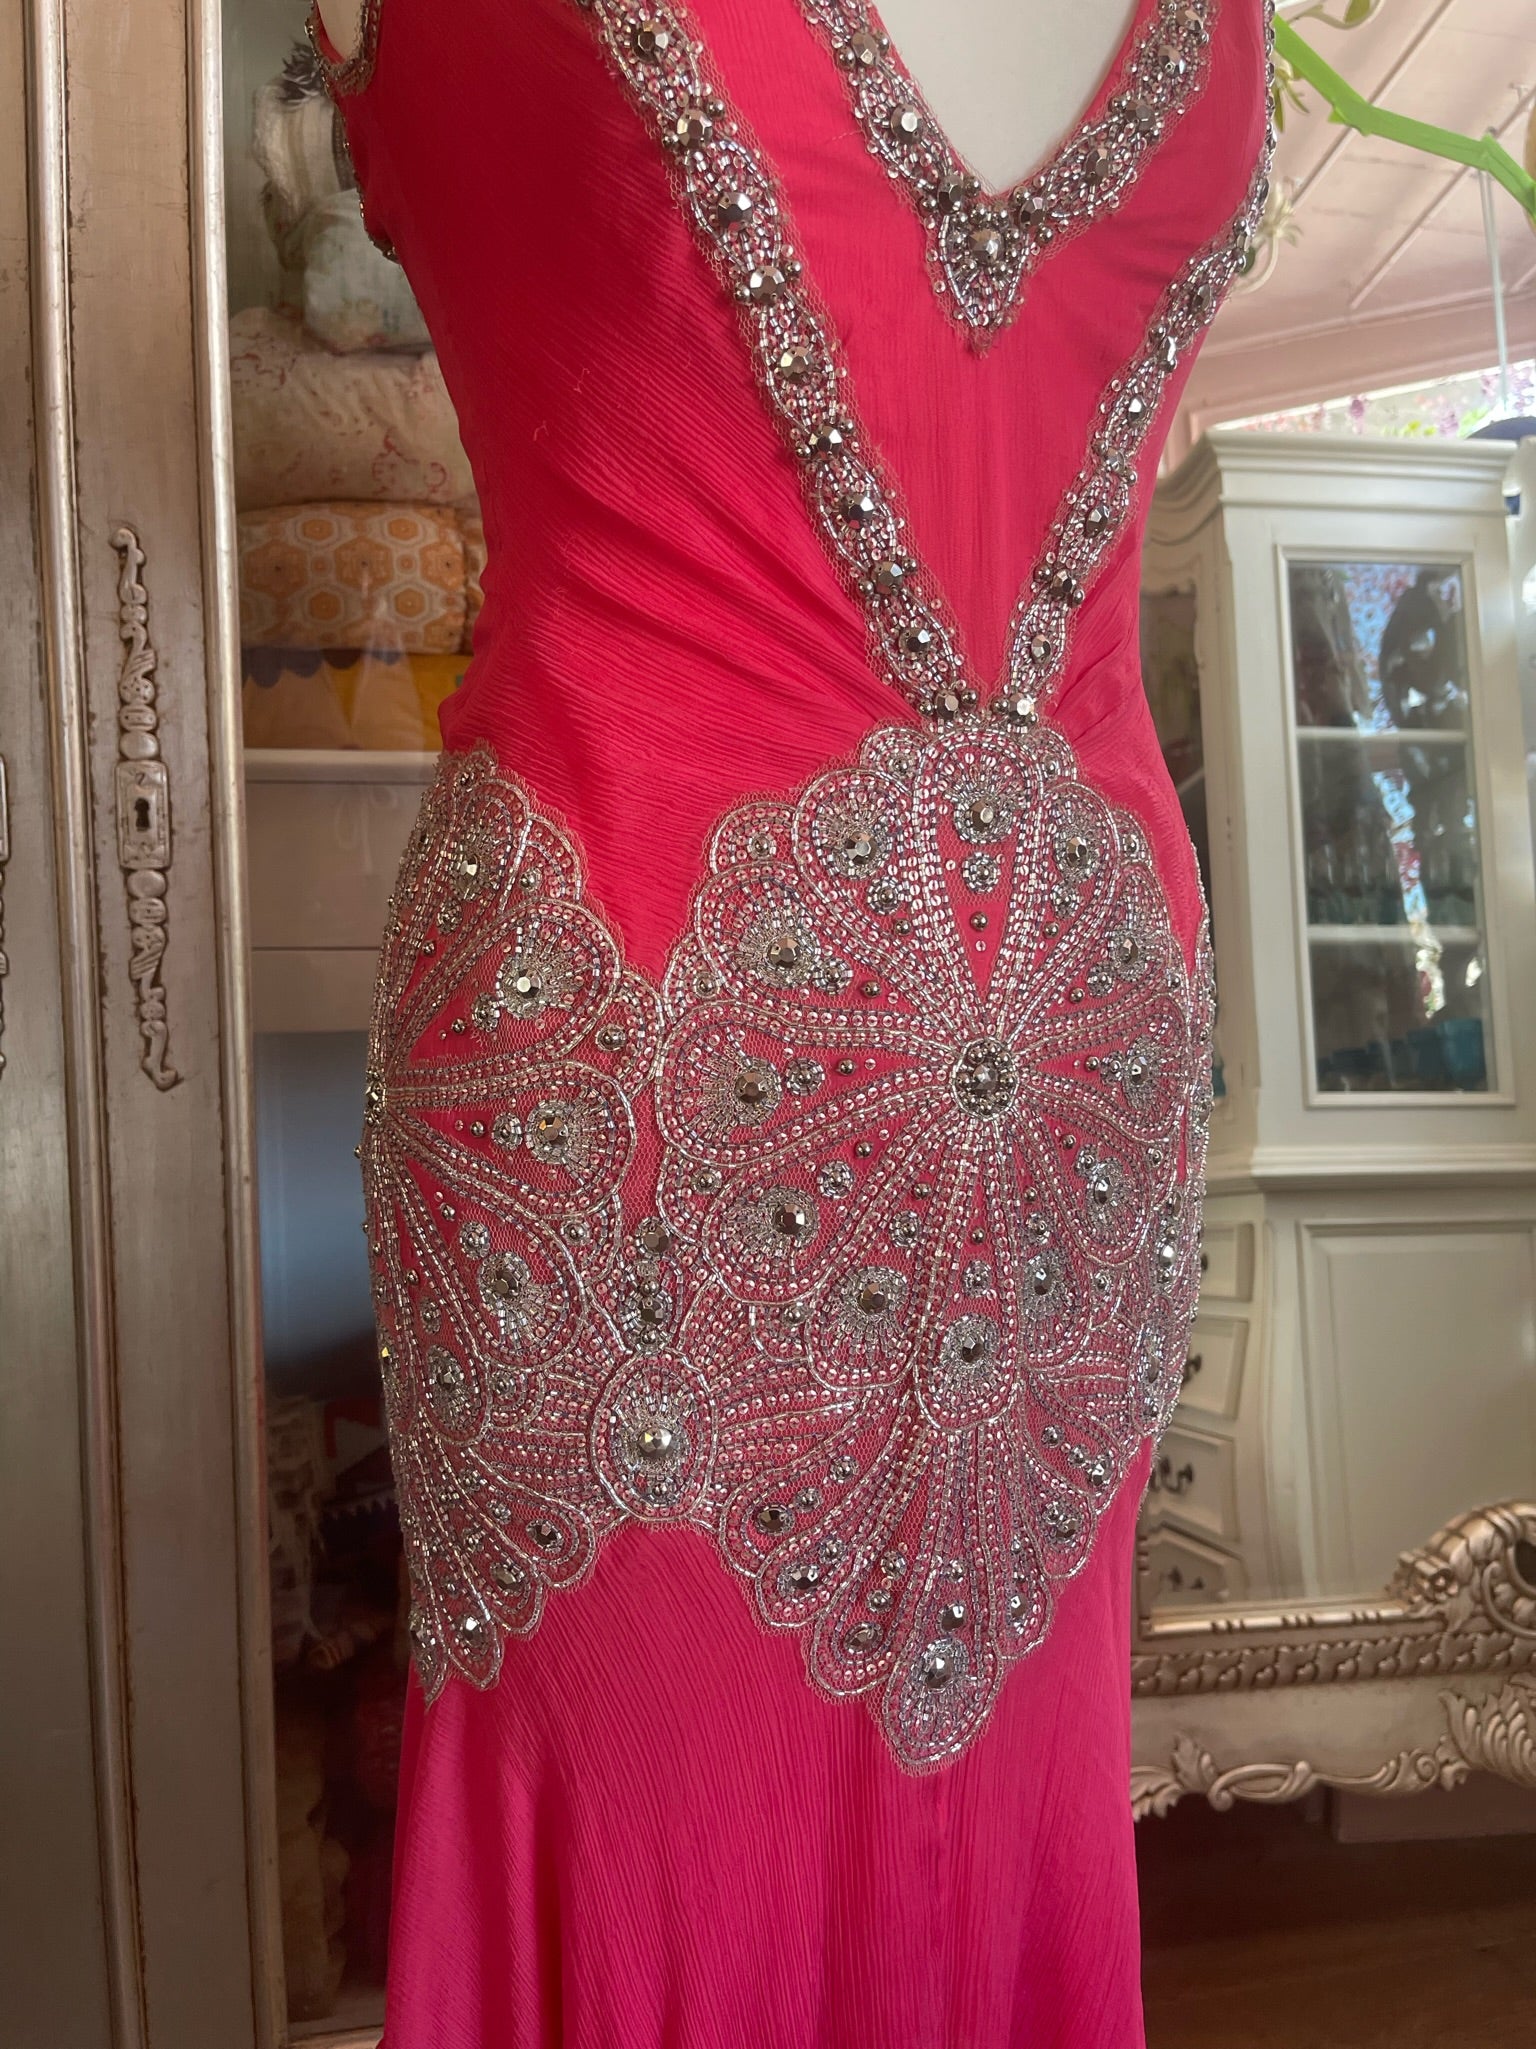 Pink Plunge Neckline Cocktail Dress